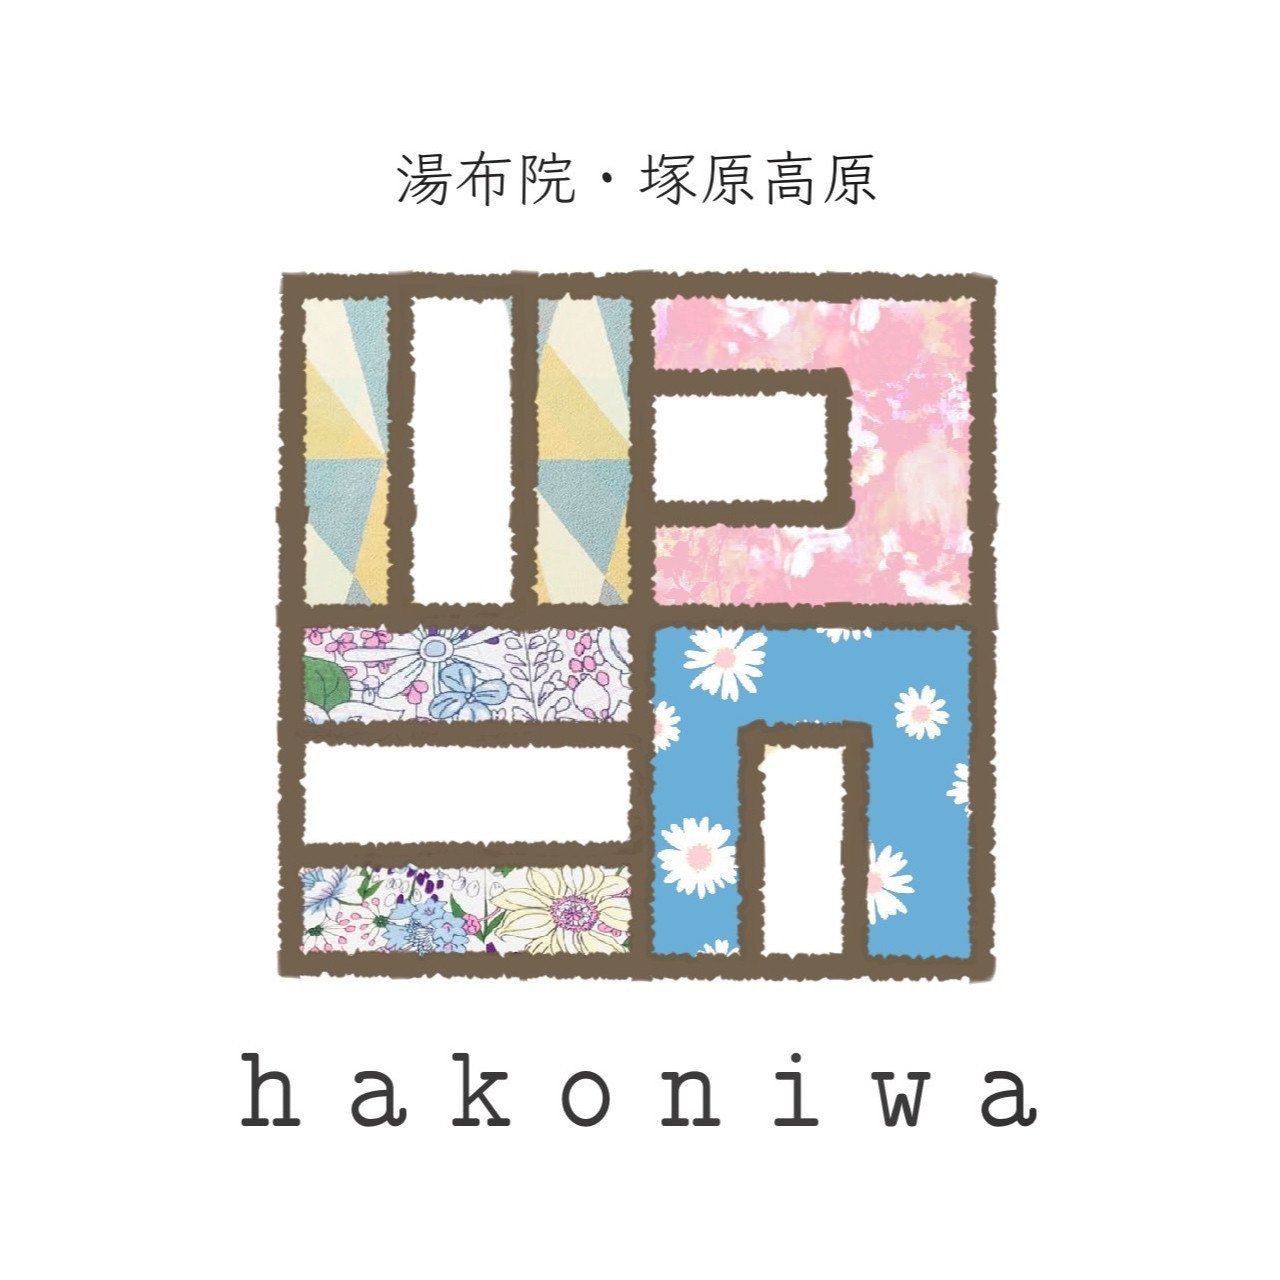 ハコニワ
-hakoniwa-